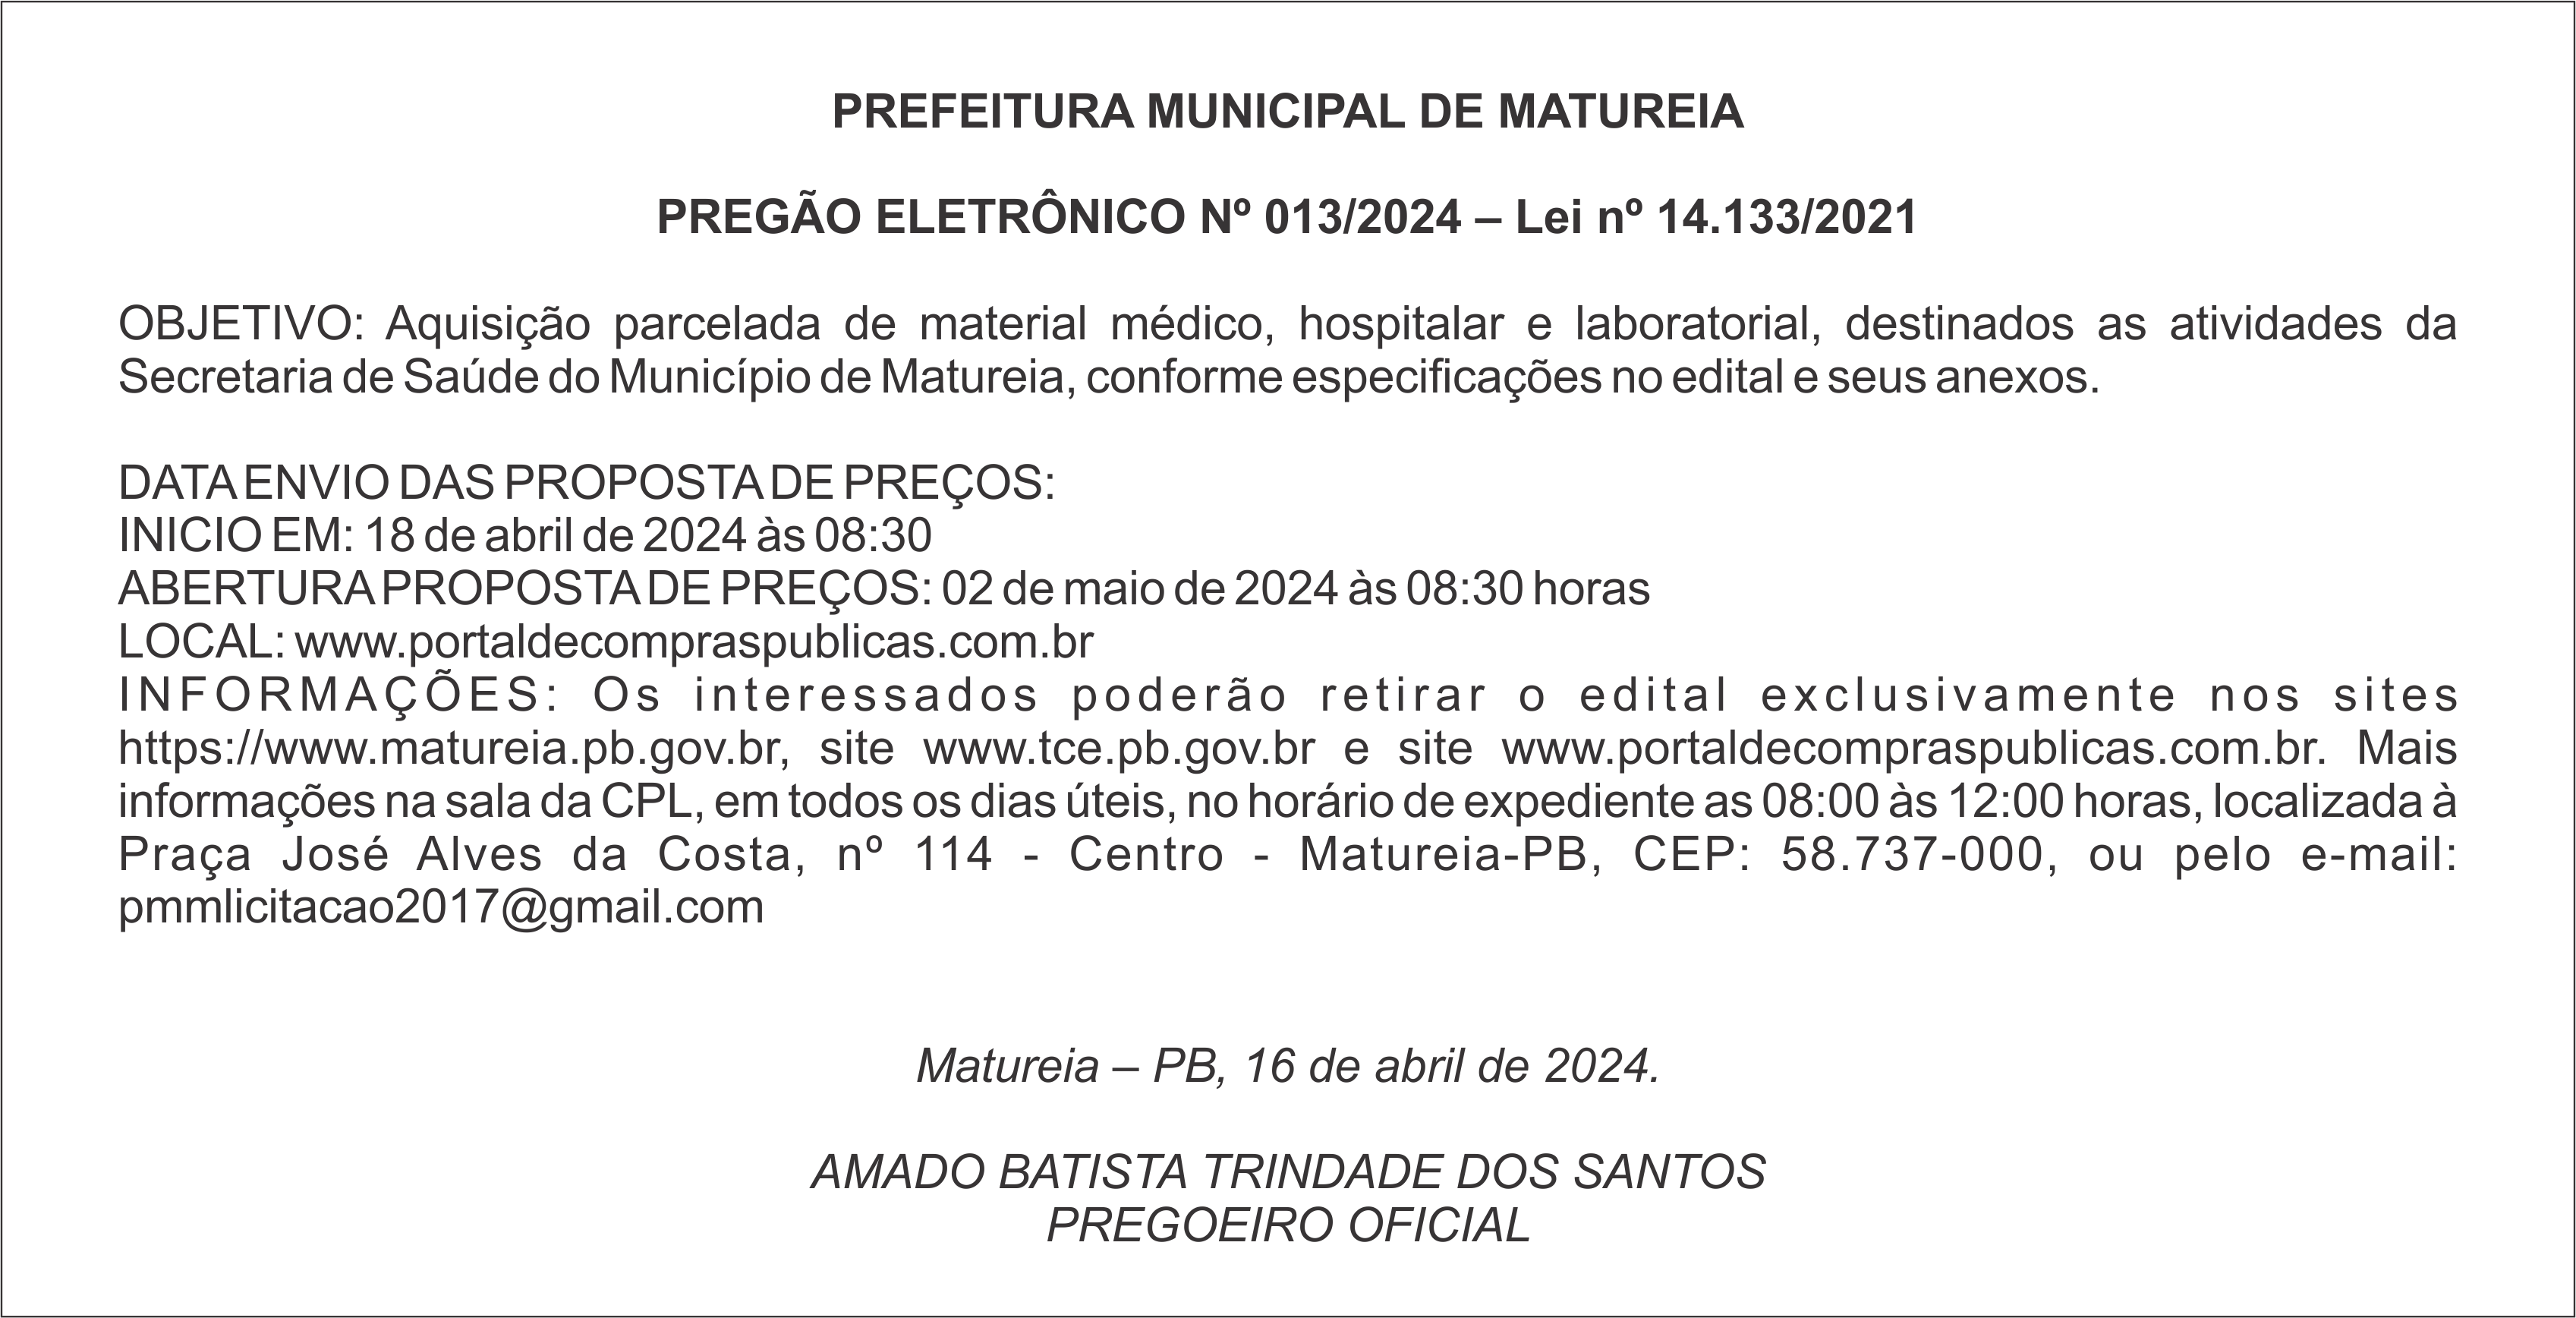 PREFEITURA MUNICIPAL DE MATUREIA – PREGÃO ELETRÔNICO Nº 013/2024